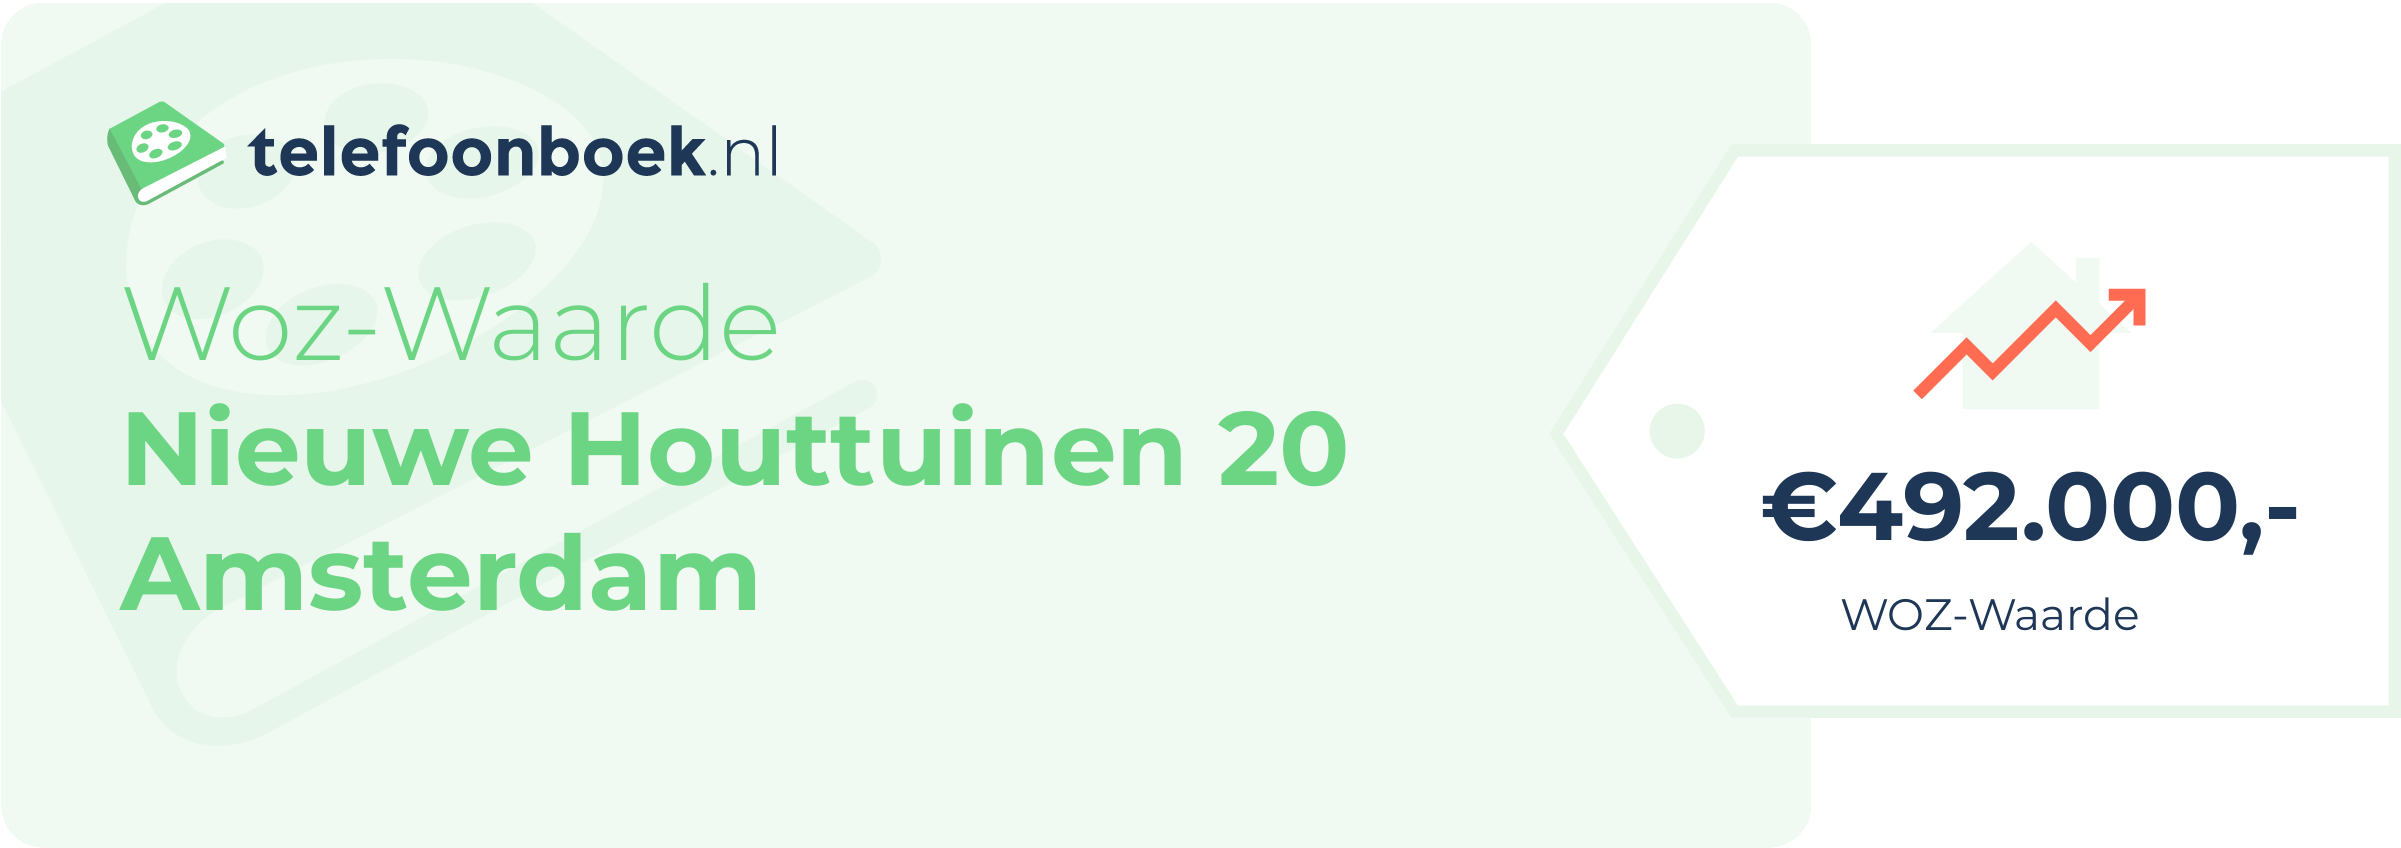 WOZ-waarde Nieuwe Houttuinen 20 Amsterdam